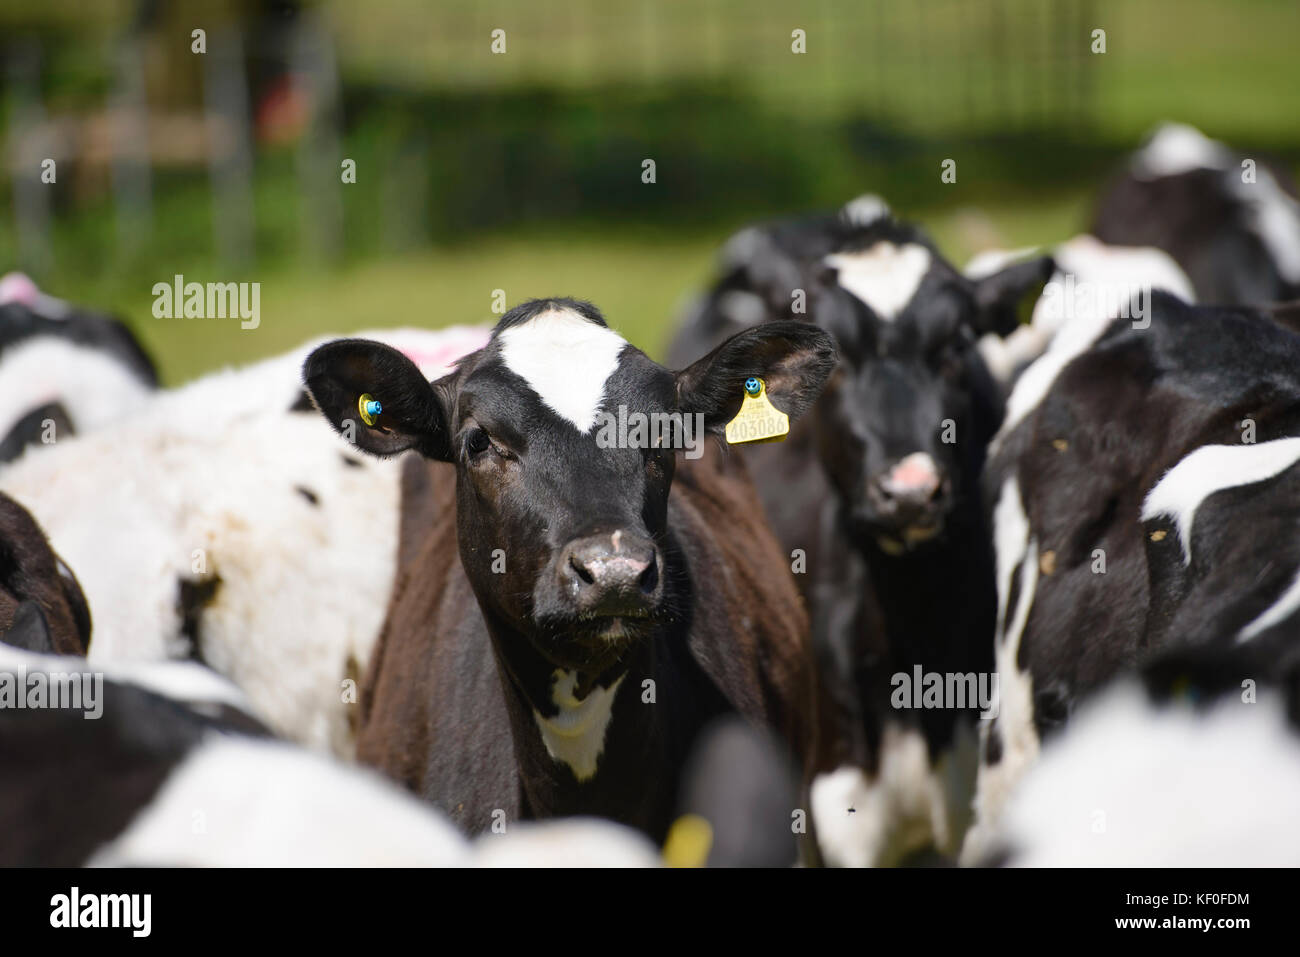 Holstein dairy heifer calves in grass field, Staffordshire. Stock Photo